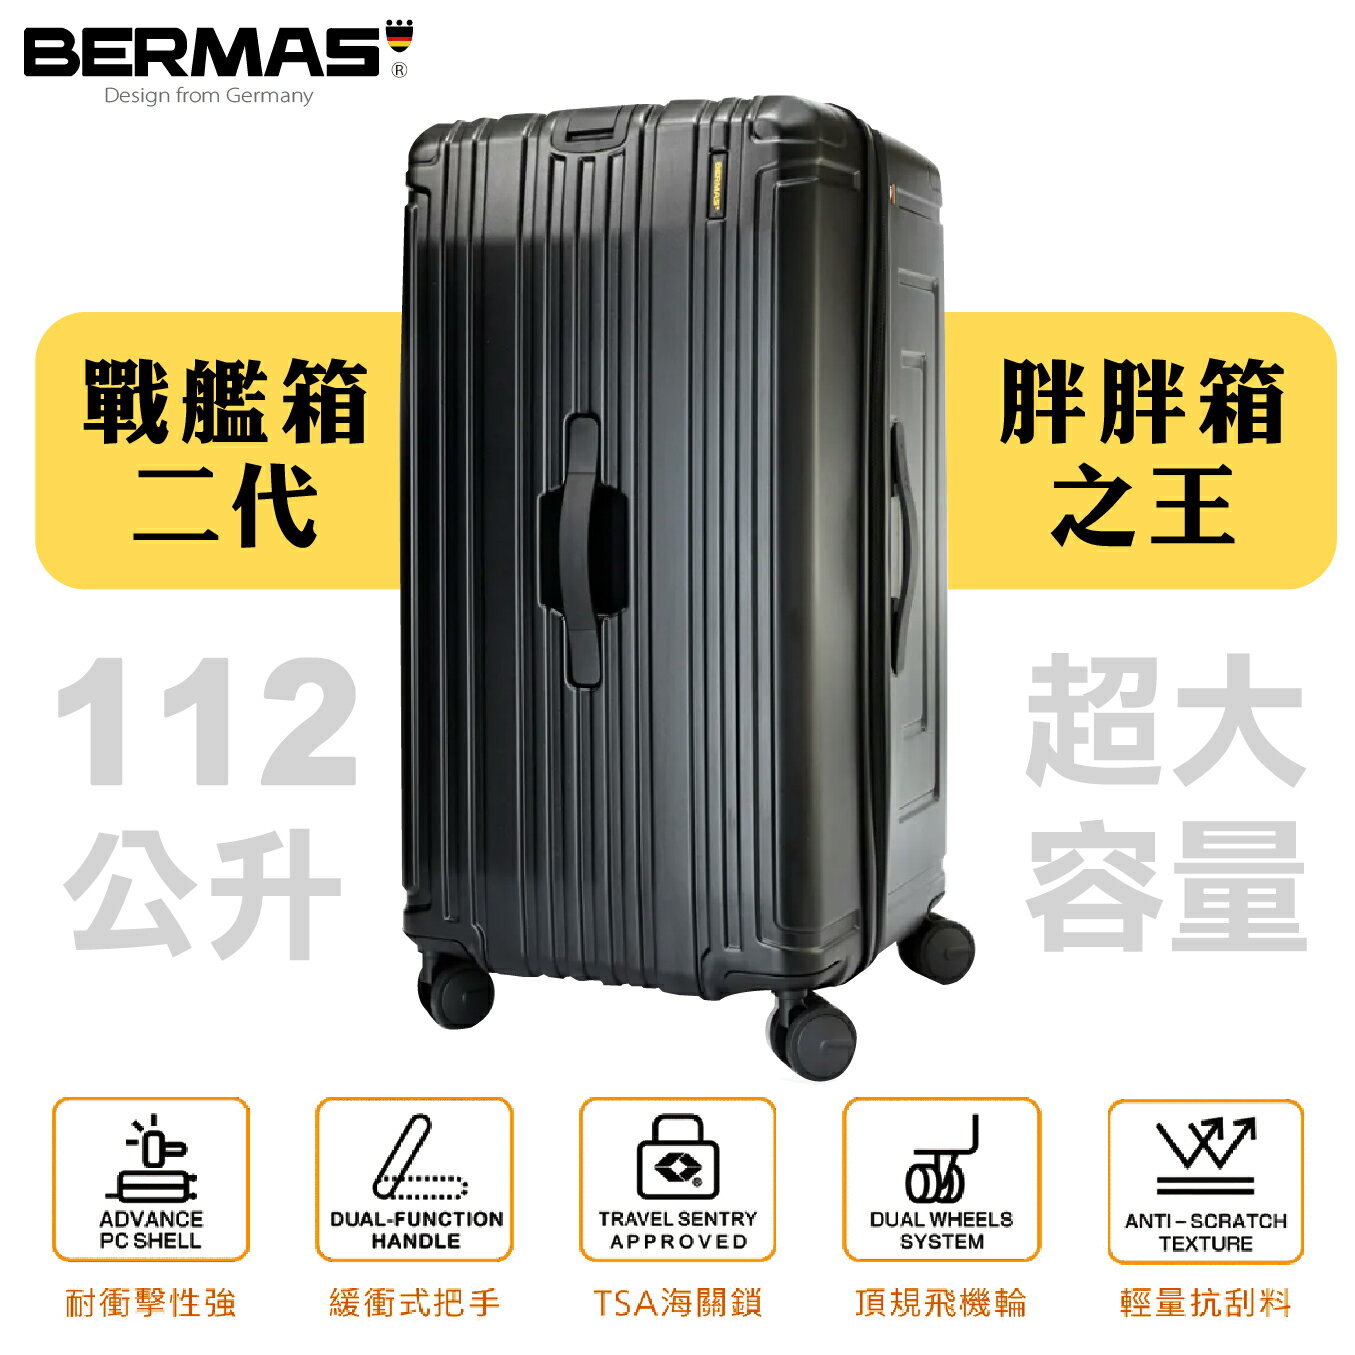 【超大容量】BERMAS戰艦二代- 30吋超輕防刮大容量行李箱 黑/粉/藍/銀色胖胖箱 大容量輕量 收納代購箱 超深下蓋 耐用穩固